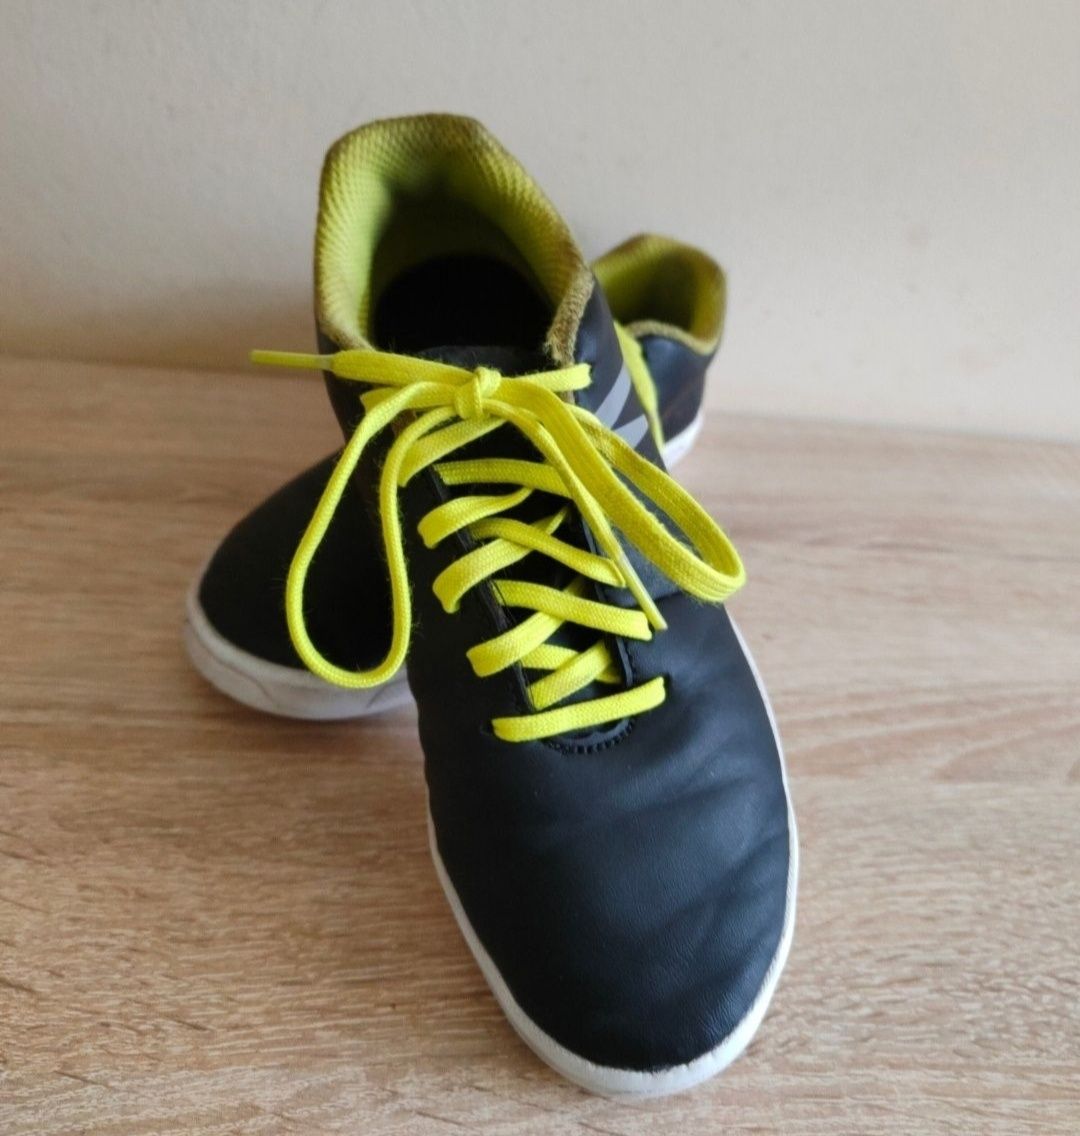 Buty halówki do grania w piłkę nożną lub biegania